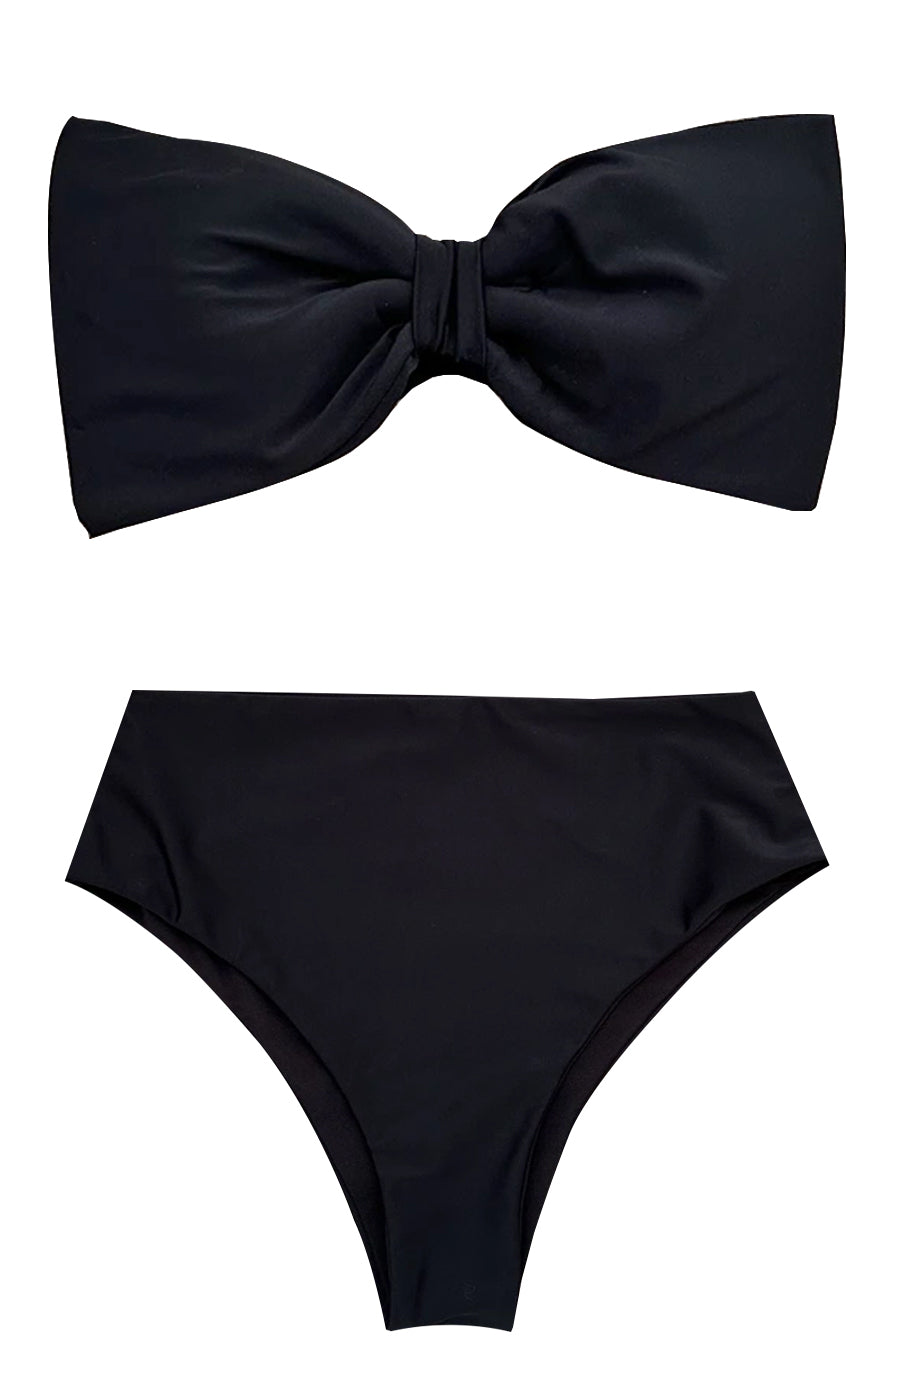 Tiana Στράπλες Μπικίνι Μαγιό με Φιόγκο | Γυναικεία Μαγιό - Swimwear Bikini | Tiana Strapless Bow Bikini